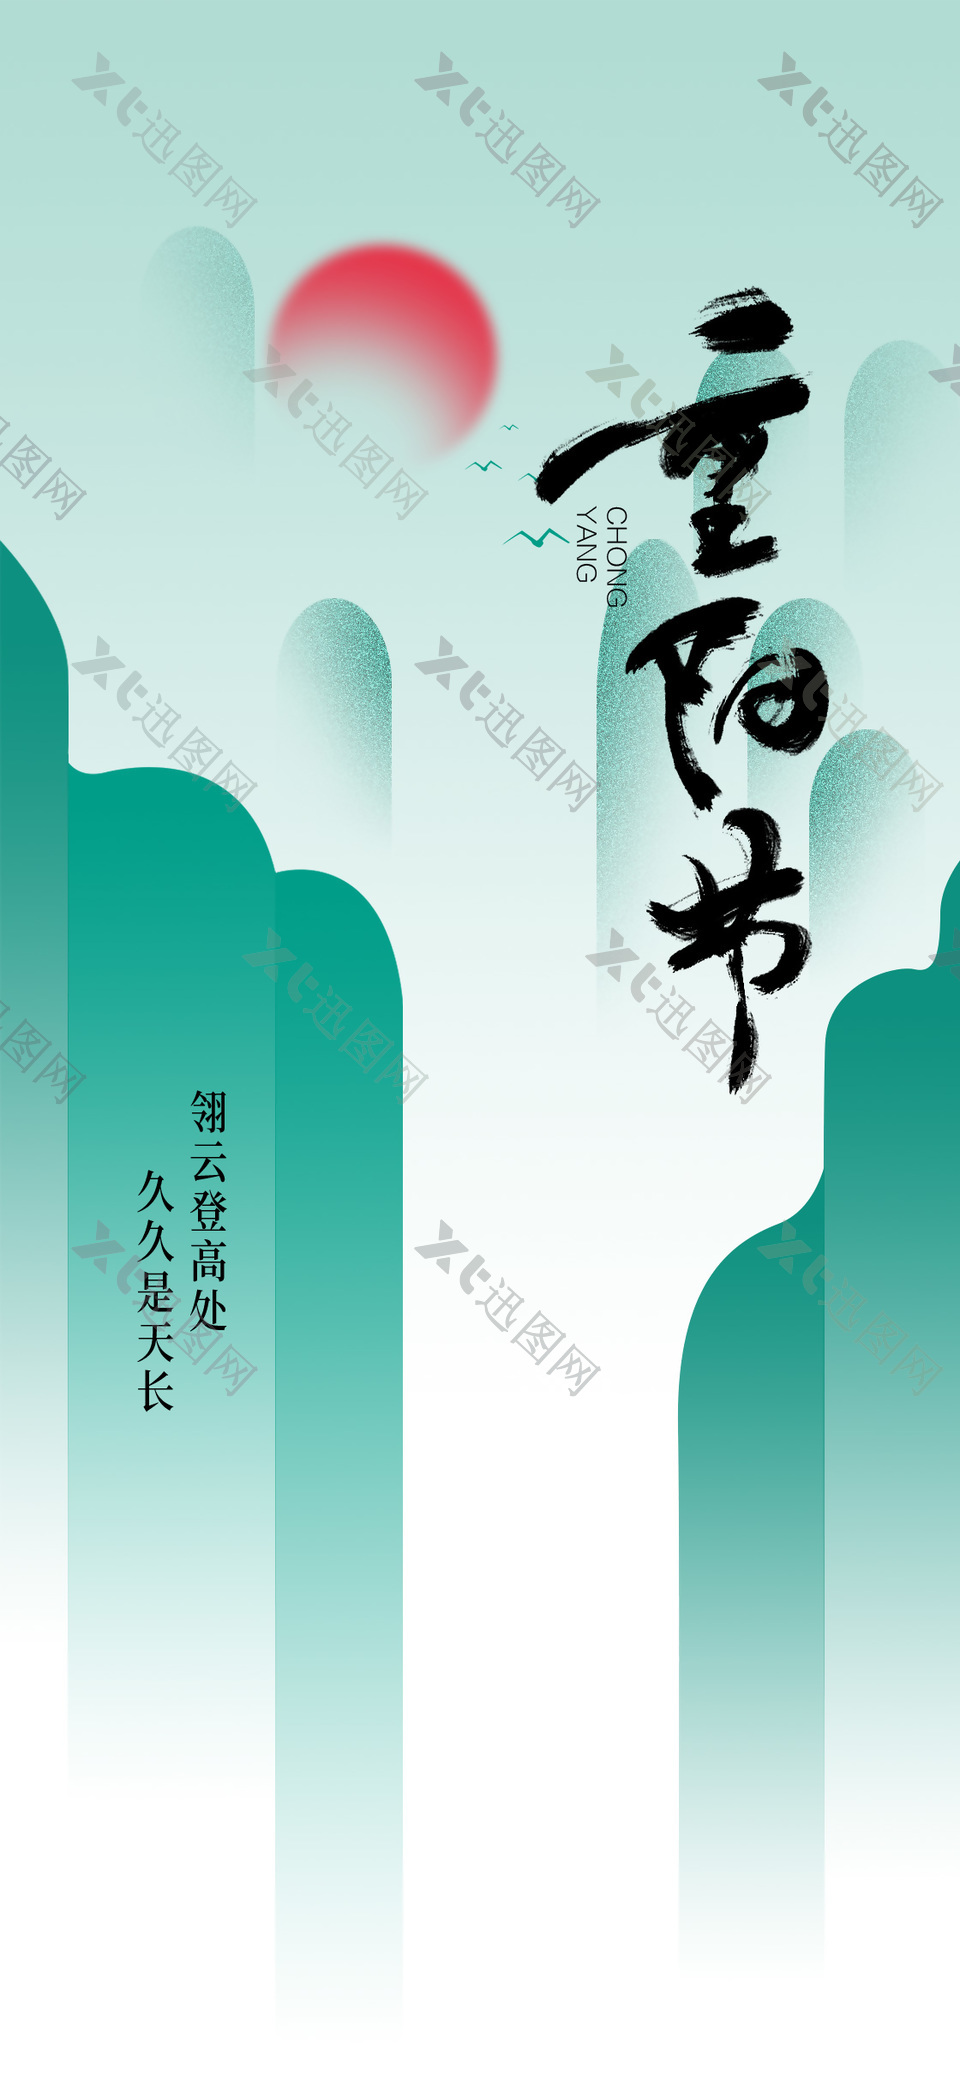 重阳节简约古风插画节日宣传海报设计